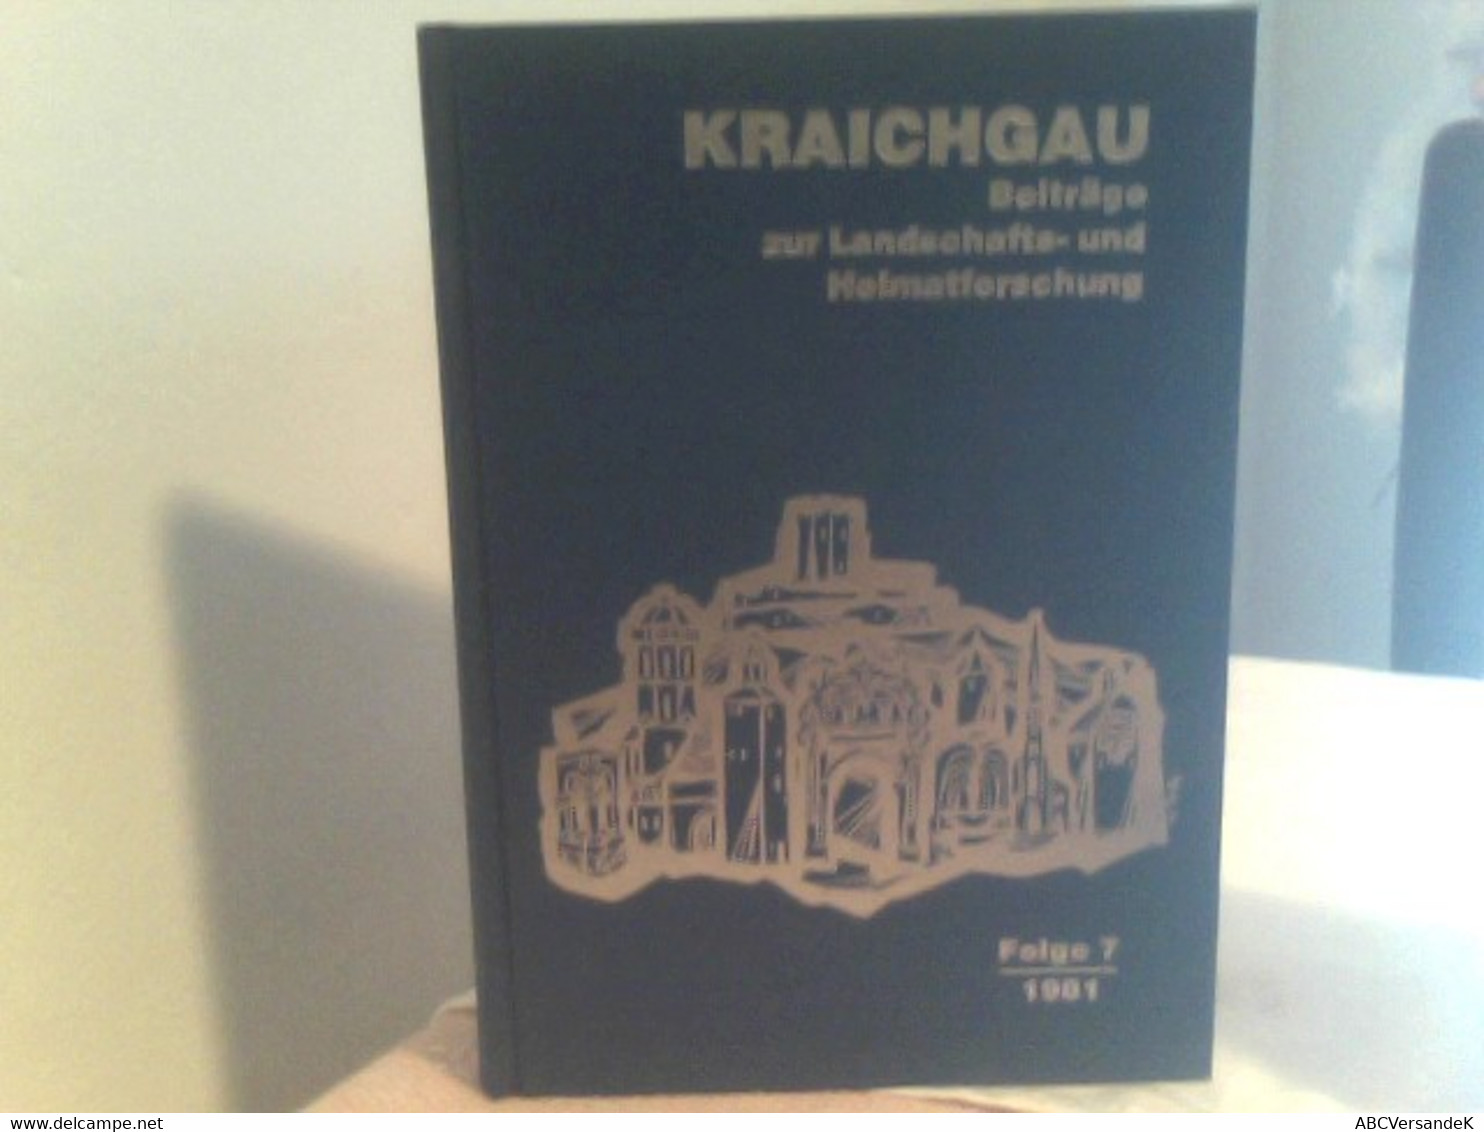 KRAICHGAU Beiträge Zur Landschafts - Und Heimatforschung Folge 7 1981 - Alemania Todos